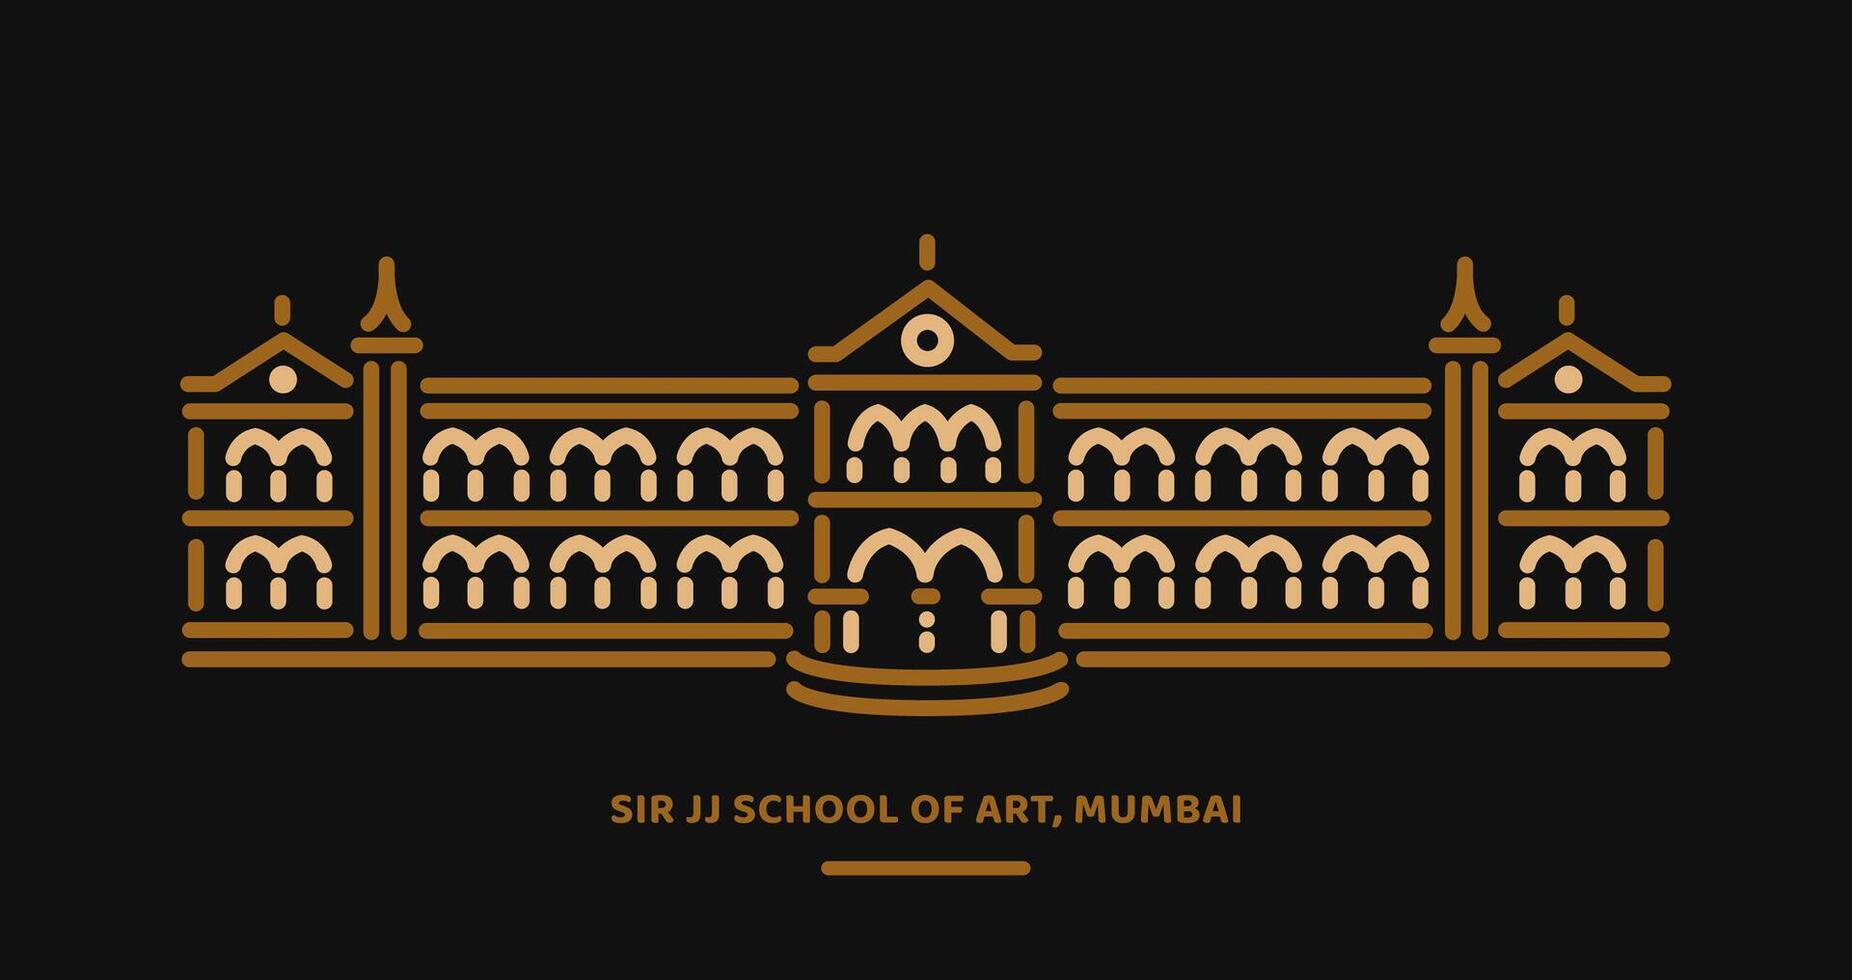 meneer jj school- van kunst collage in Mumbai gebouw lijn illustratie. vector